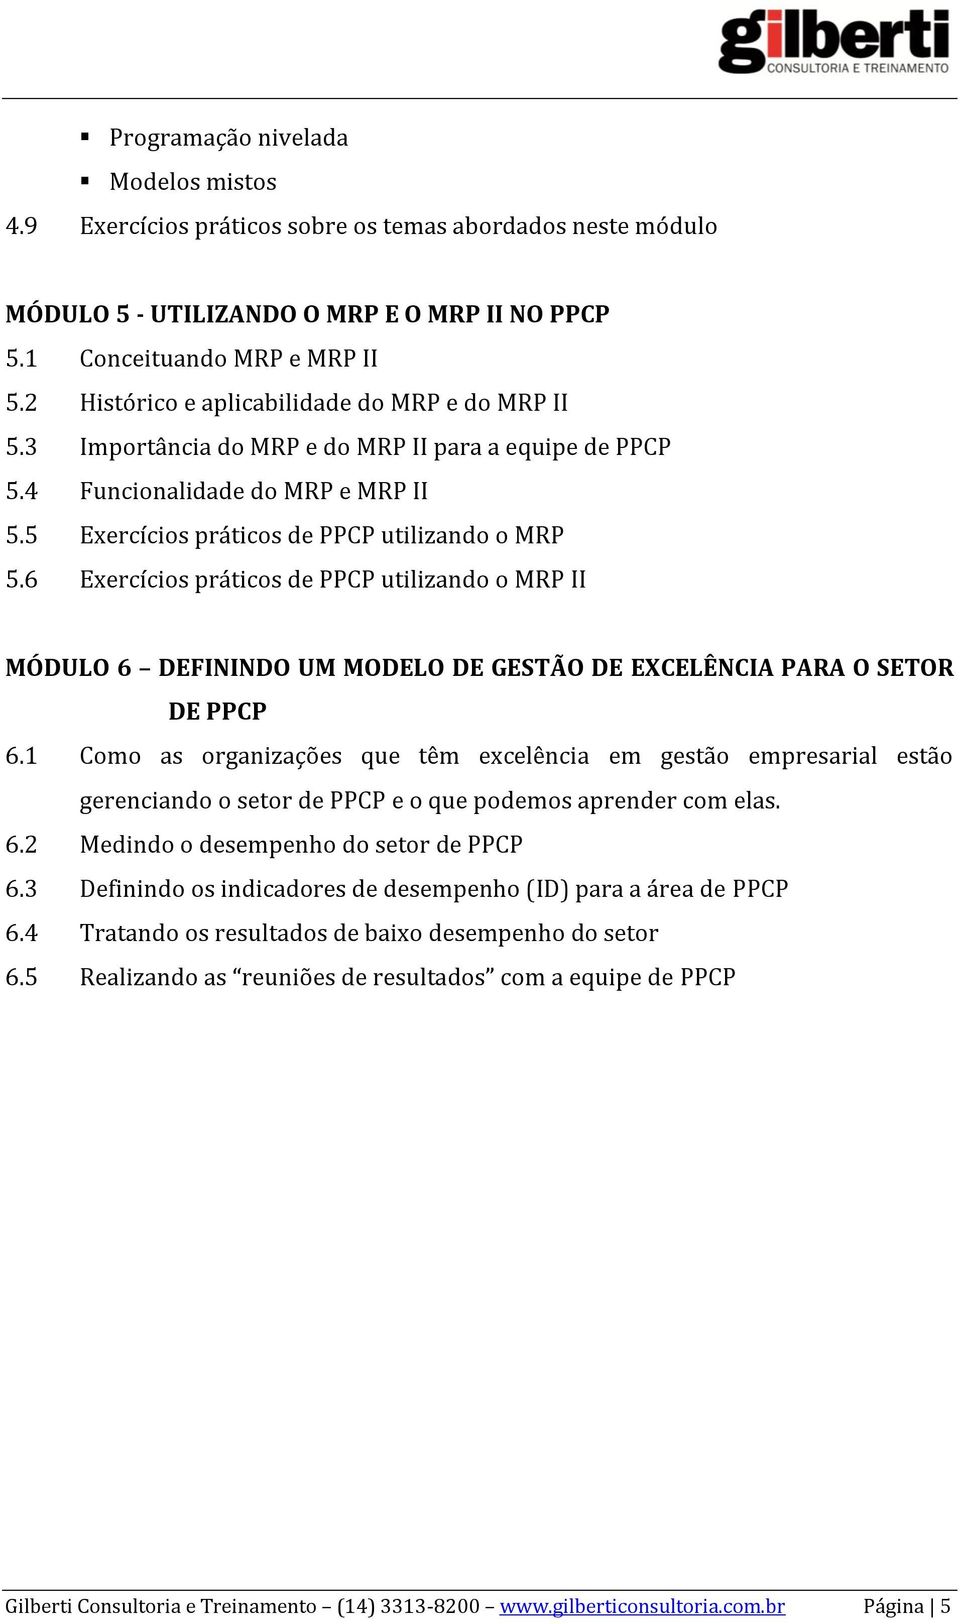 6 Exercícios práticos de PPCP utilizando o MRP II MÓDULO 6 DEFININDO UM MODELO DE GESTÃO DE EXCELÊNCIA PARA O SETOR DE PPCP 6.